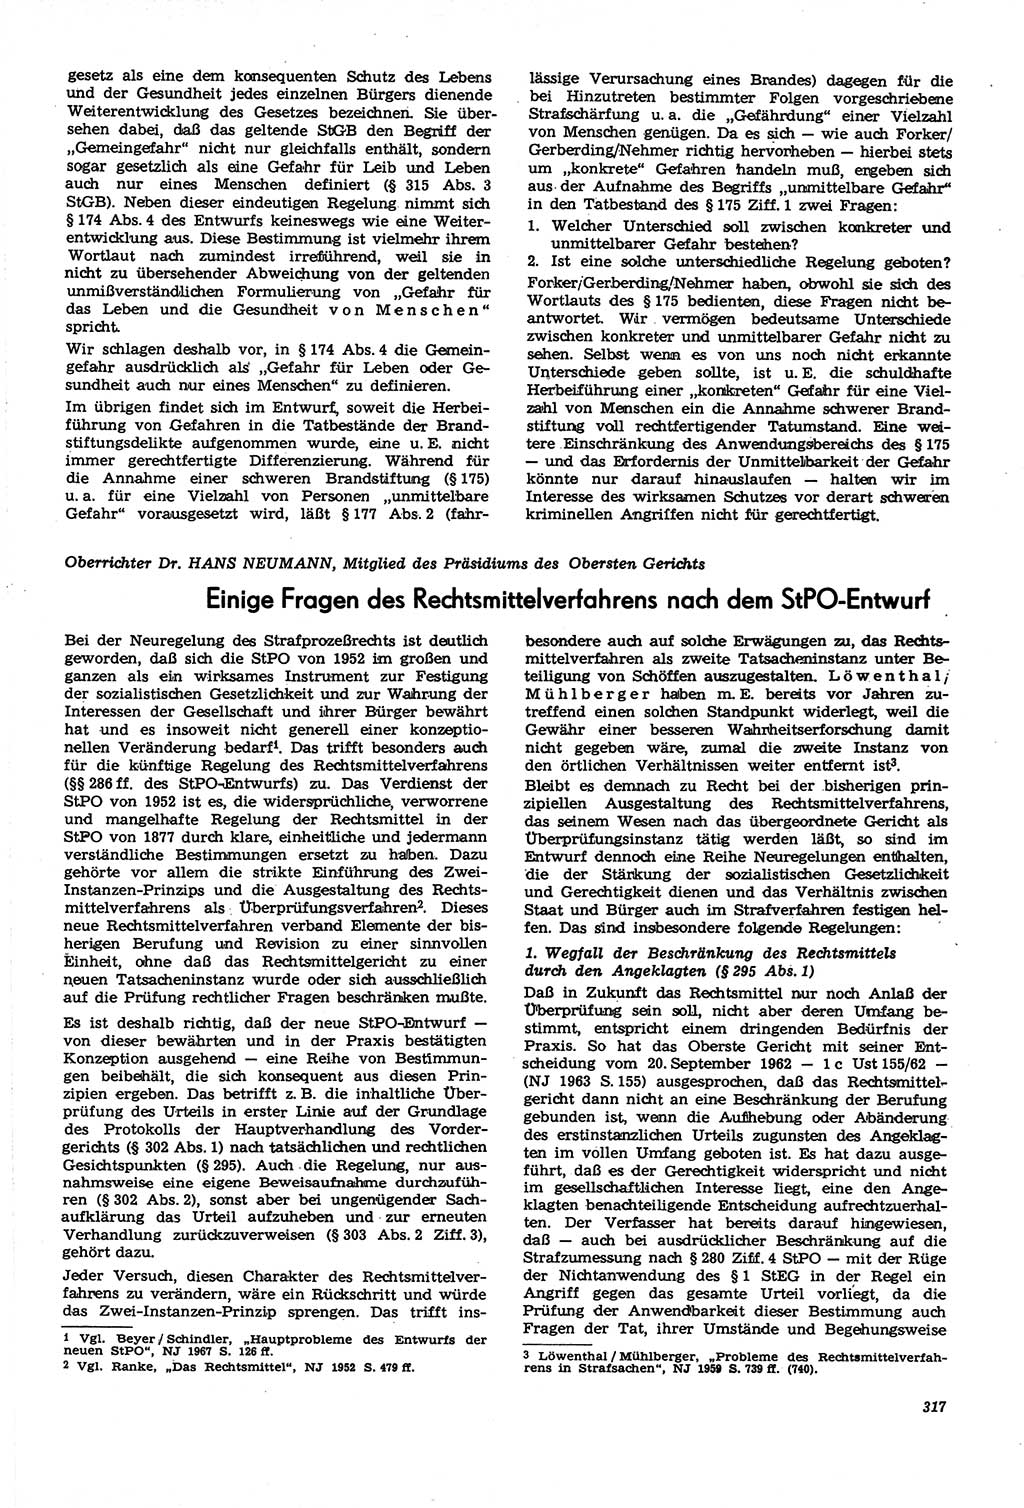 Neue Justiz (NJ), Zeitschrift für Recht und Rechtswissenschaft [Deutsche Demokratische Republik (DDR)], 21. Jahrgang 1967, Seite 317 (NJ DDR 1967, S. 317)